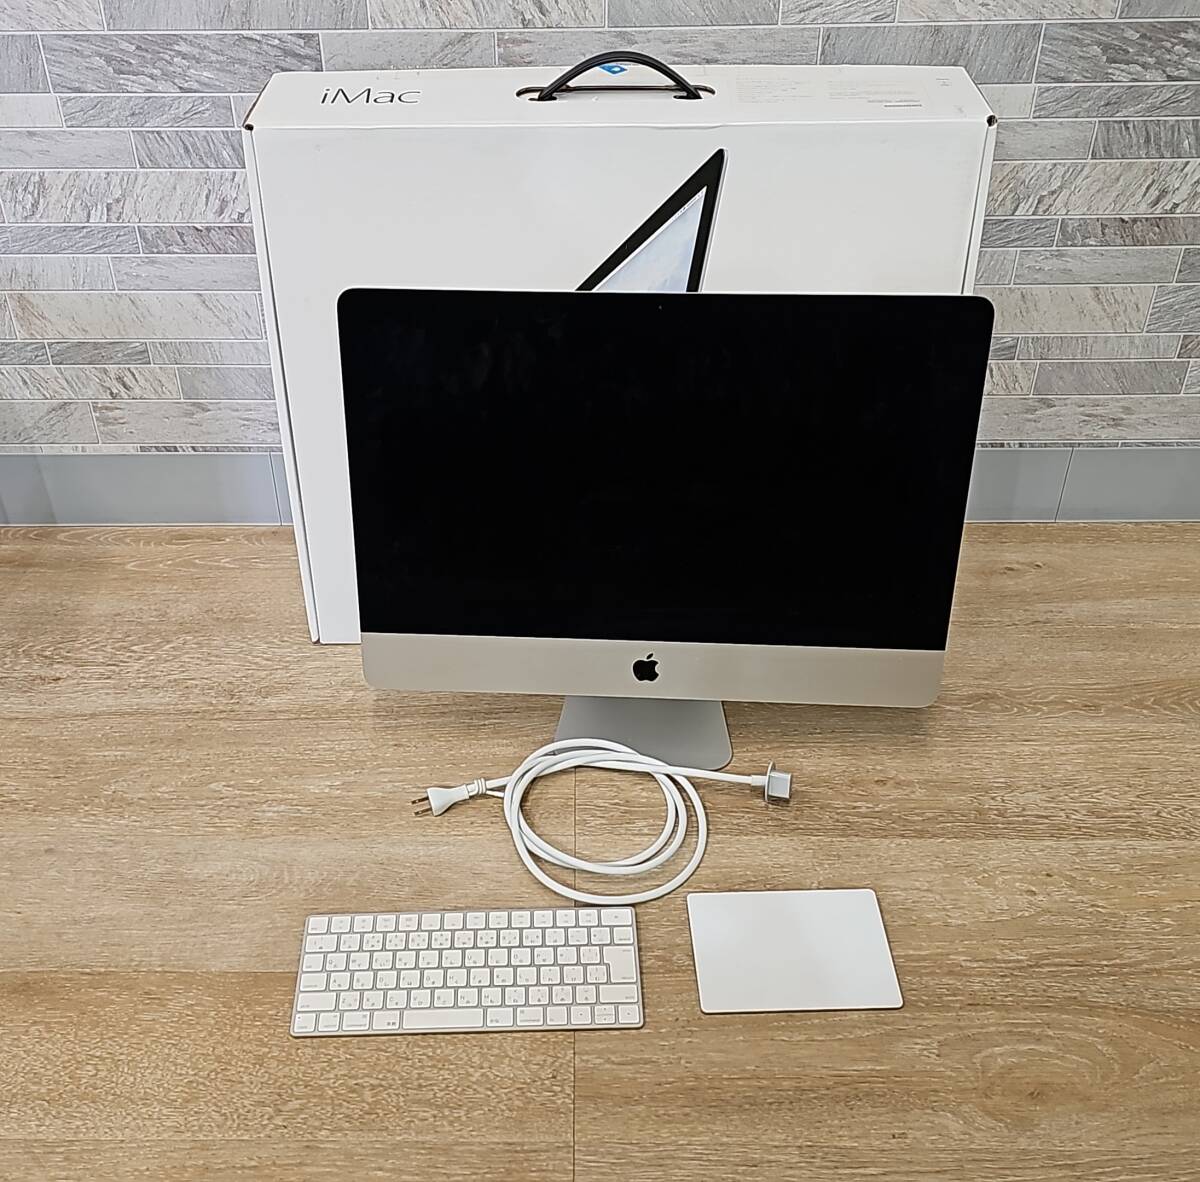 K1130★ Apple iMac 21.5インチ A1418 箱 キーボード トラックパッド 付き Core i5 Retina 4K 1TB 中古品 通電確認済 ジャンク品の画像1